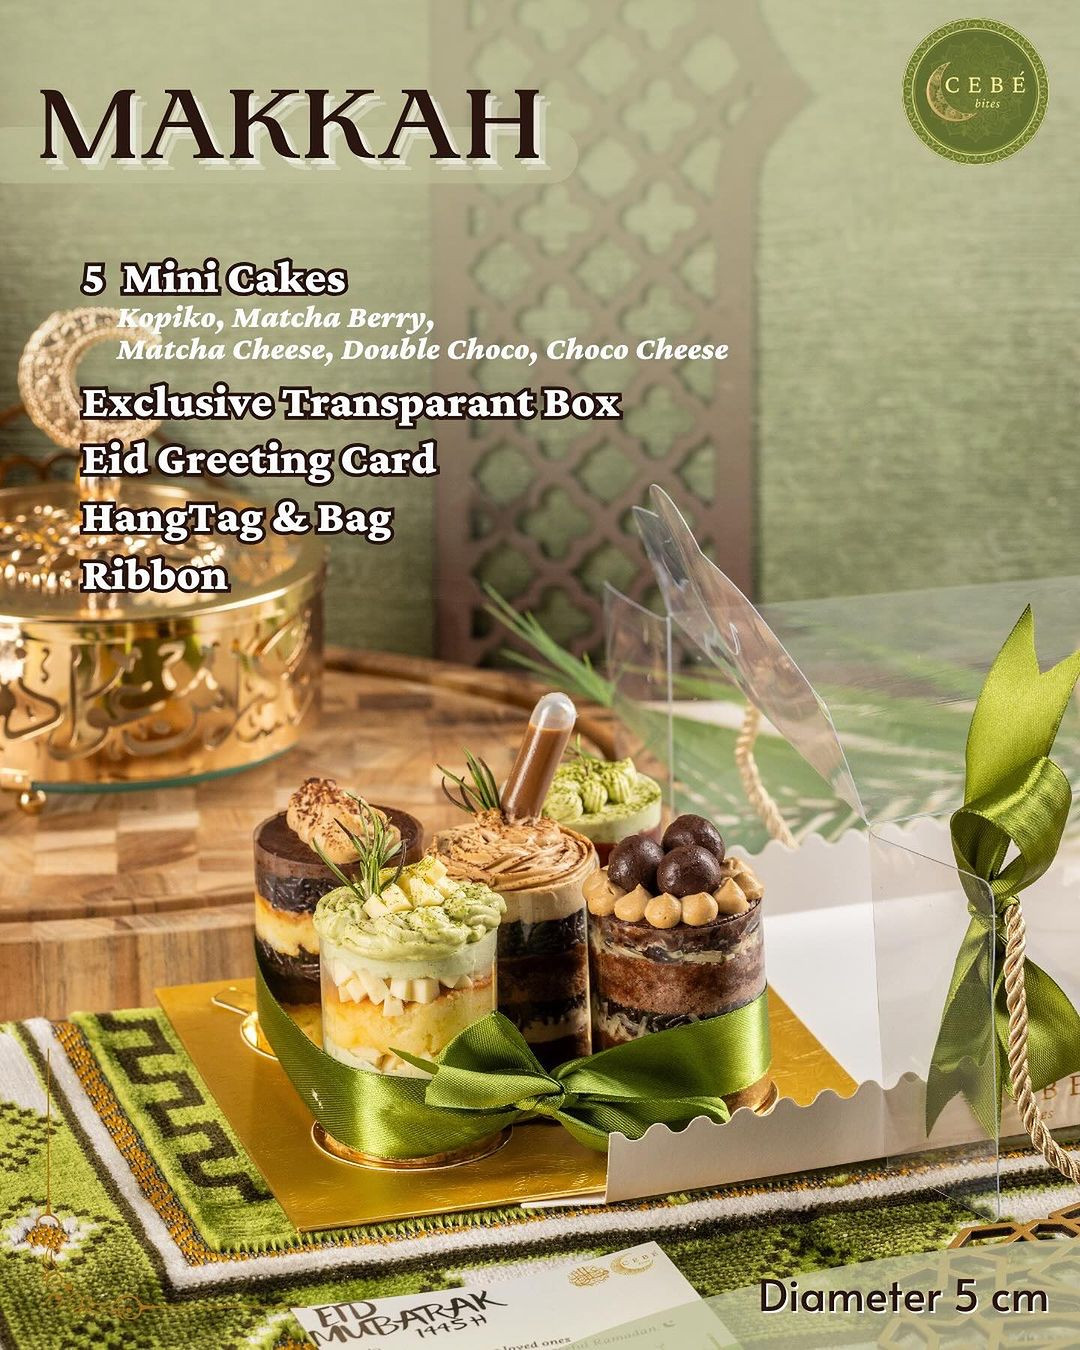 Makkah- 5 Mini Cakes